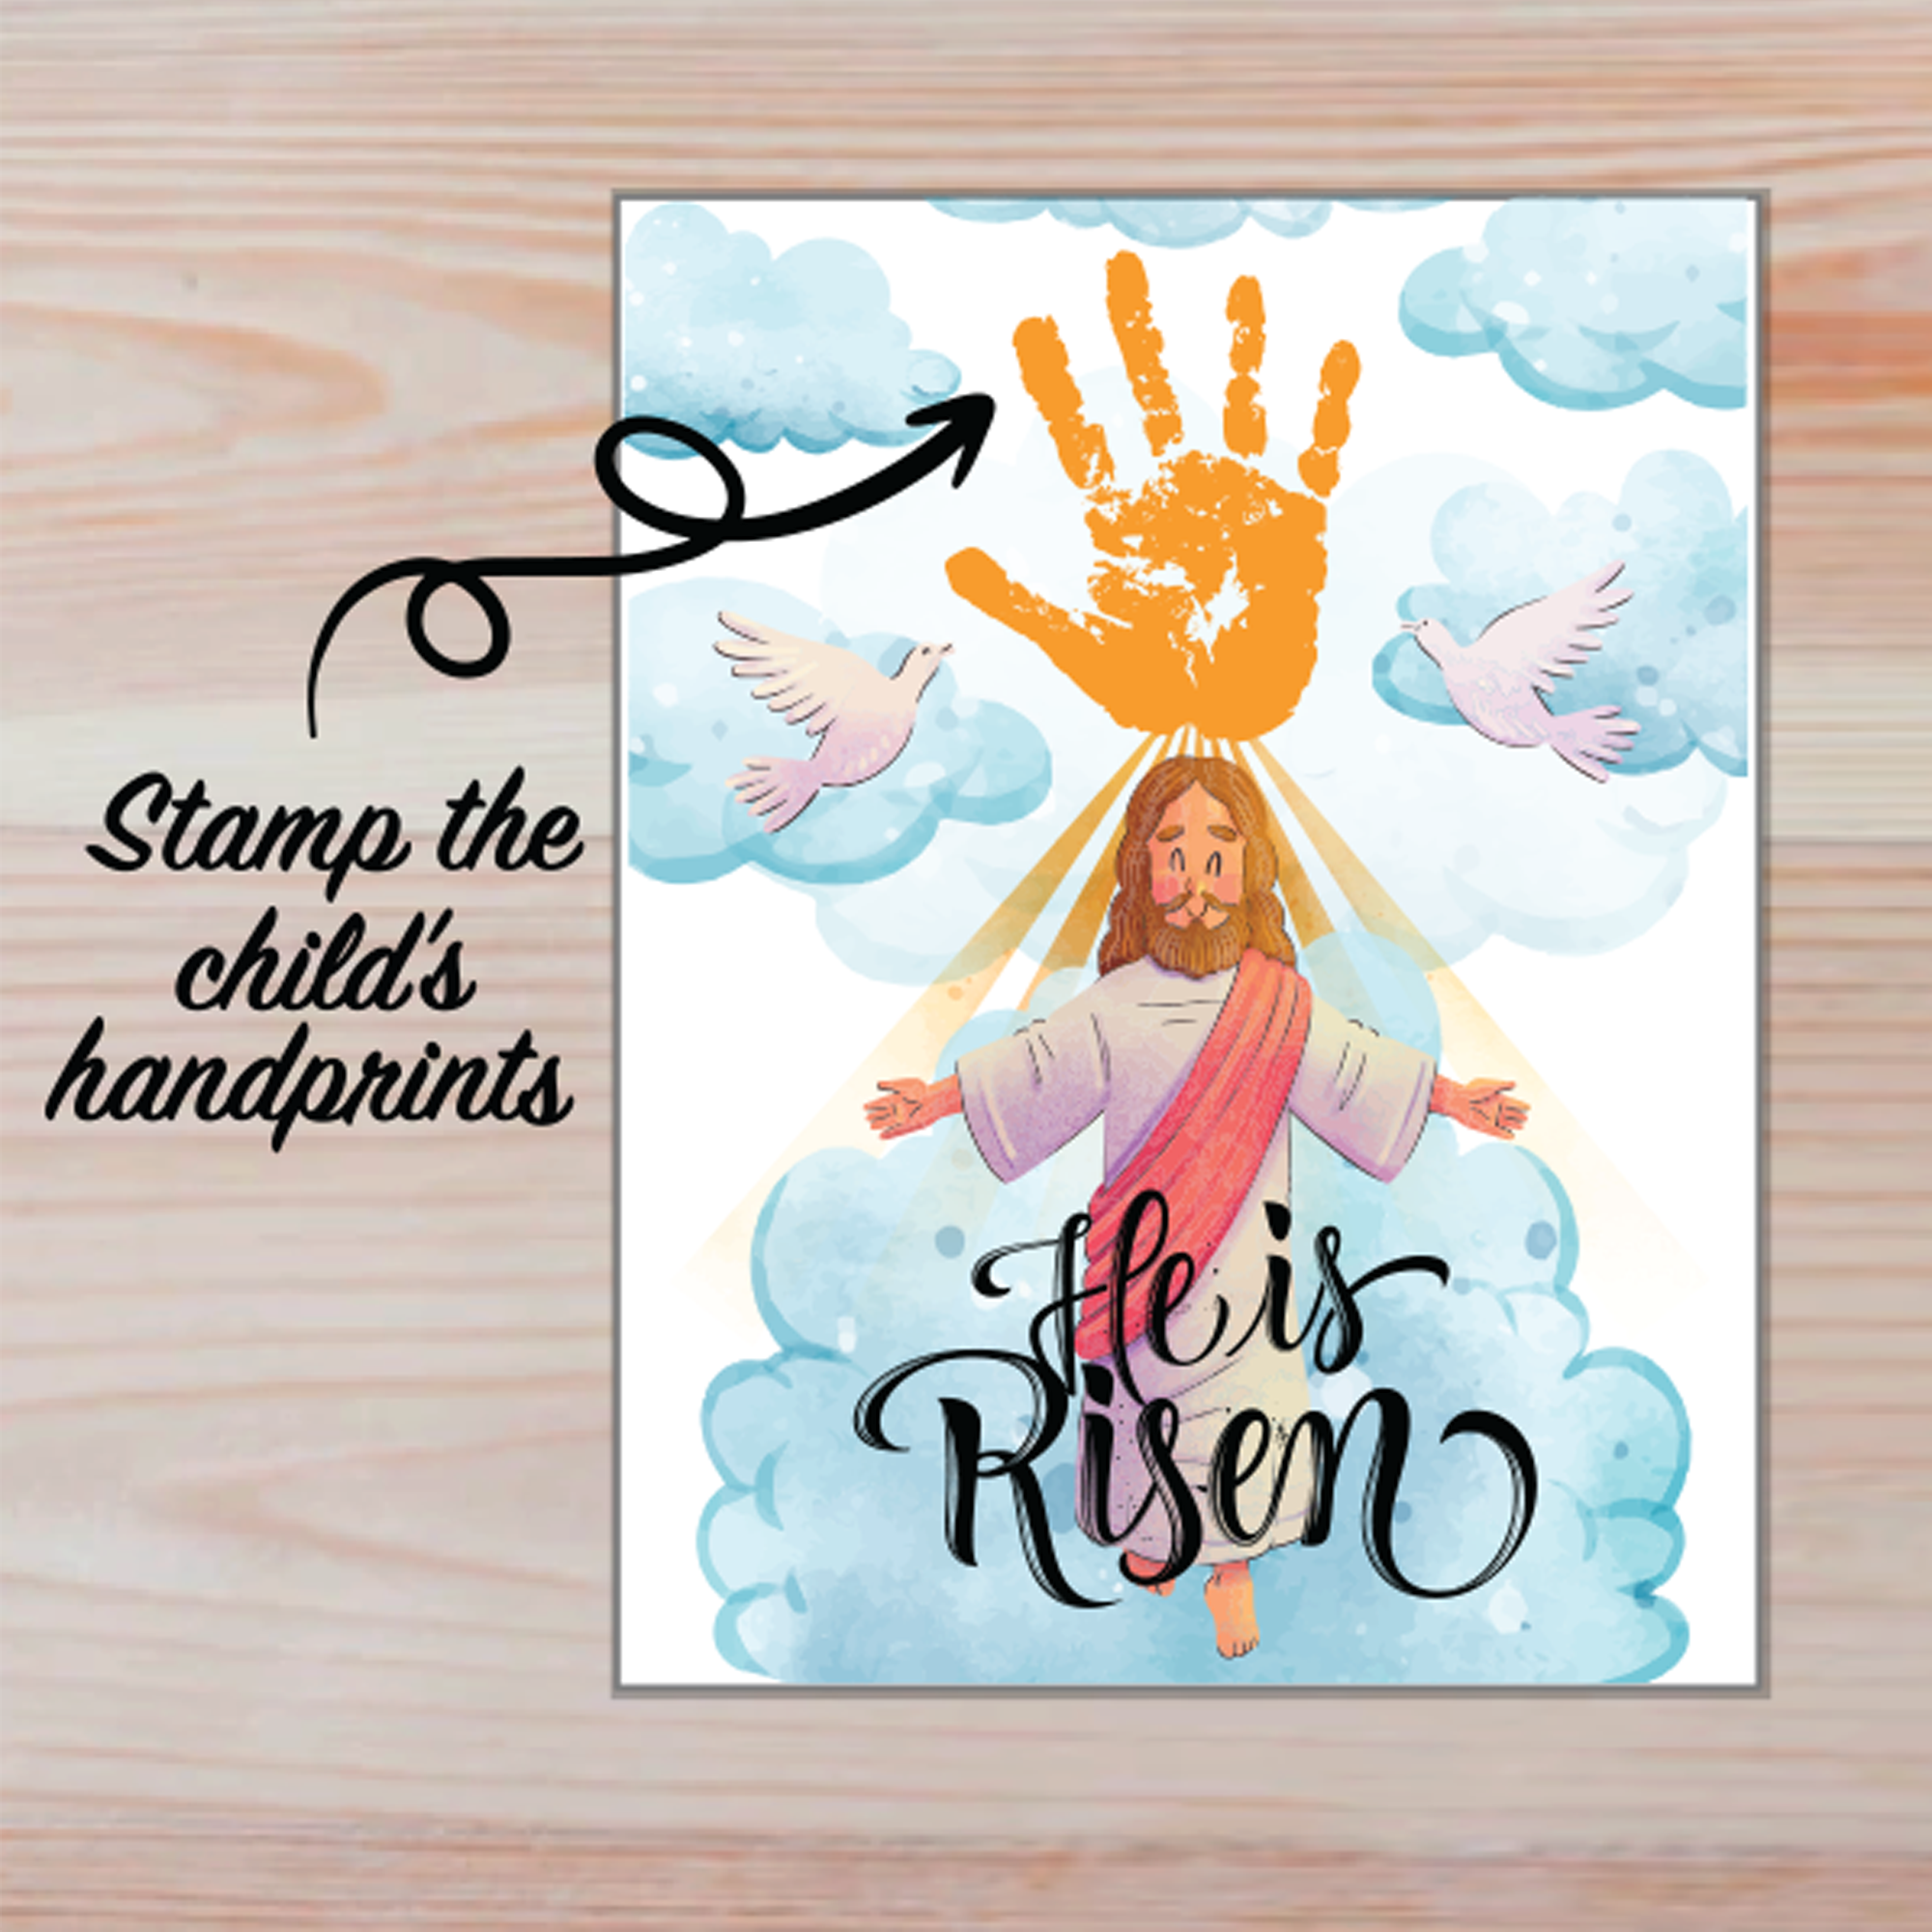 Easter handprint art craft jesus he is risen religious handprint printable sunday school activity craft preschool